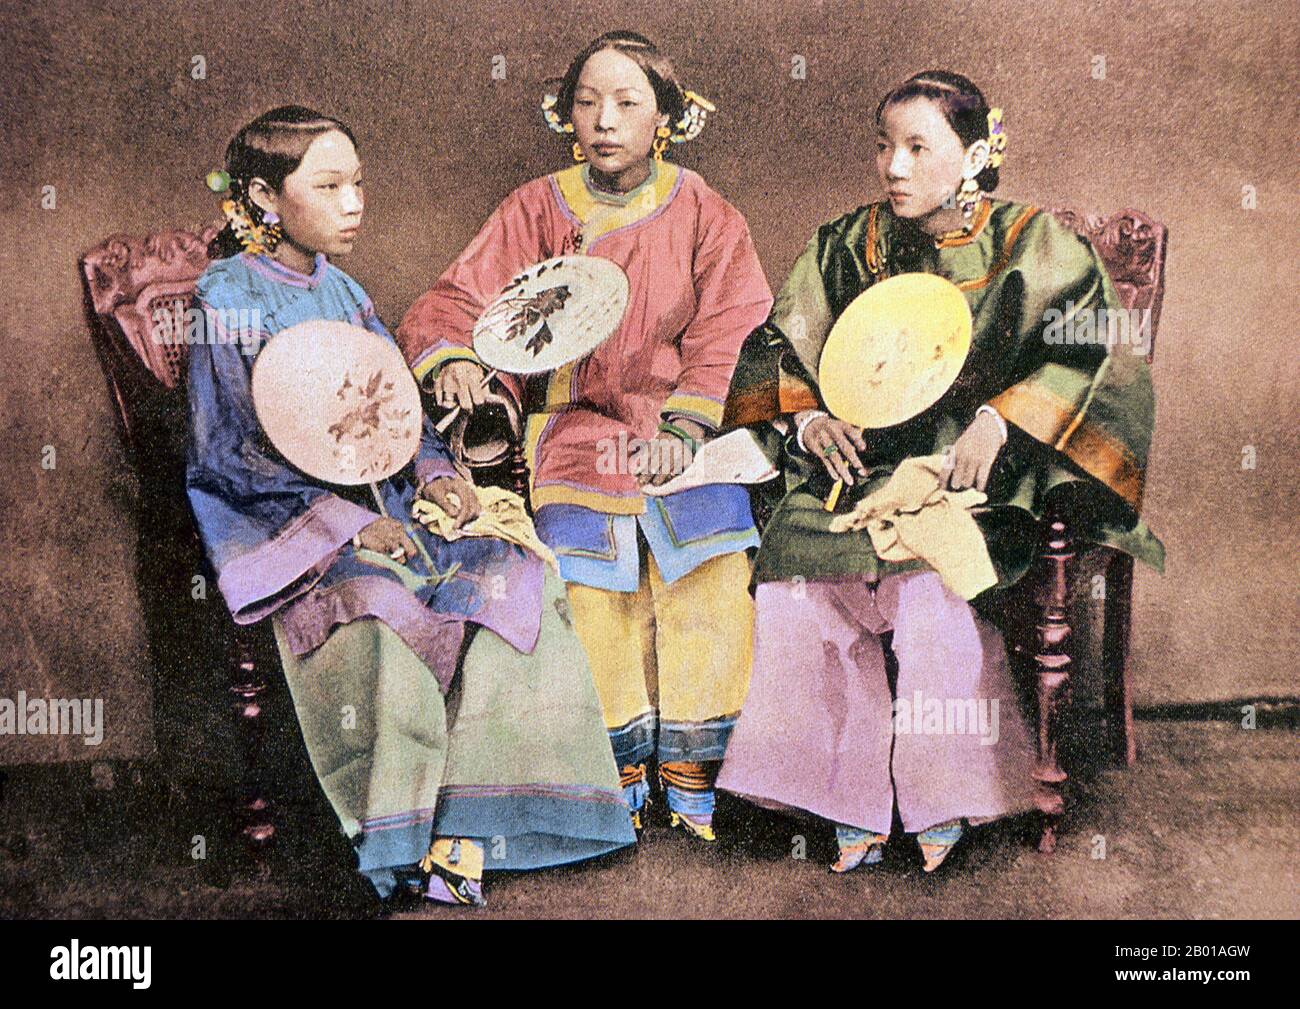 China: Drei chinesische Frauen mit gefesselten Füßen aus Xiamen. Foto von Lai Afong (1839-1890), c. 1870. Lai Afong war Fotograf und gründete Afong Studio, das erfolgreichste Fotostudio der späten Qing-Dynastie. Er gilt allgemein als der bedeutendste chinesische Fotograf des 19.. Jahrhunderts. Die Fußbindung (Pinyin: Chanzu, wörtlich „gebundene Füße“) war ein Brauch, der ungefähr tausend Jahre lang in China an jungen Mädchen und Frauen praktiziert wurde und im 10.. Jahrhundert begann und in der ersten Hälfte des 20.. Jahrhunderts endete. Stockfoto